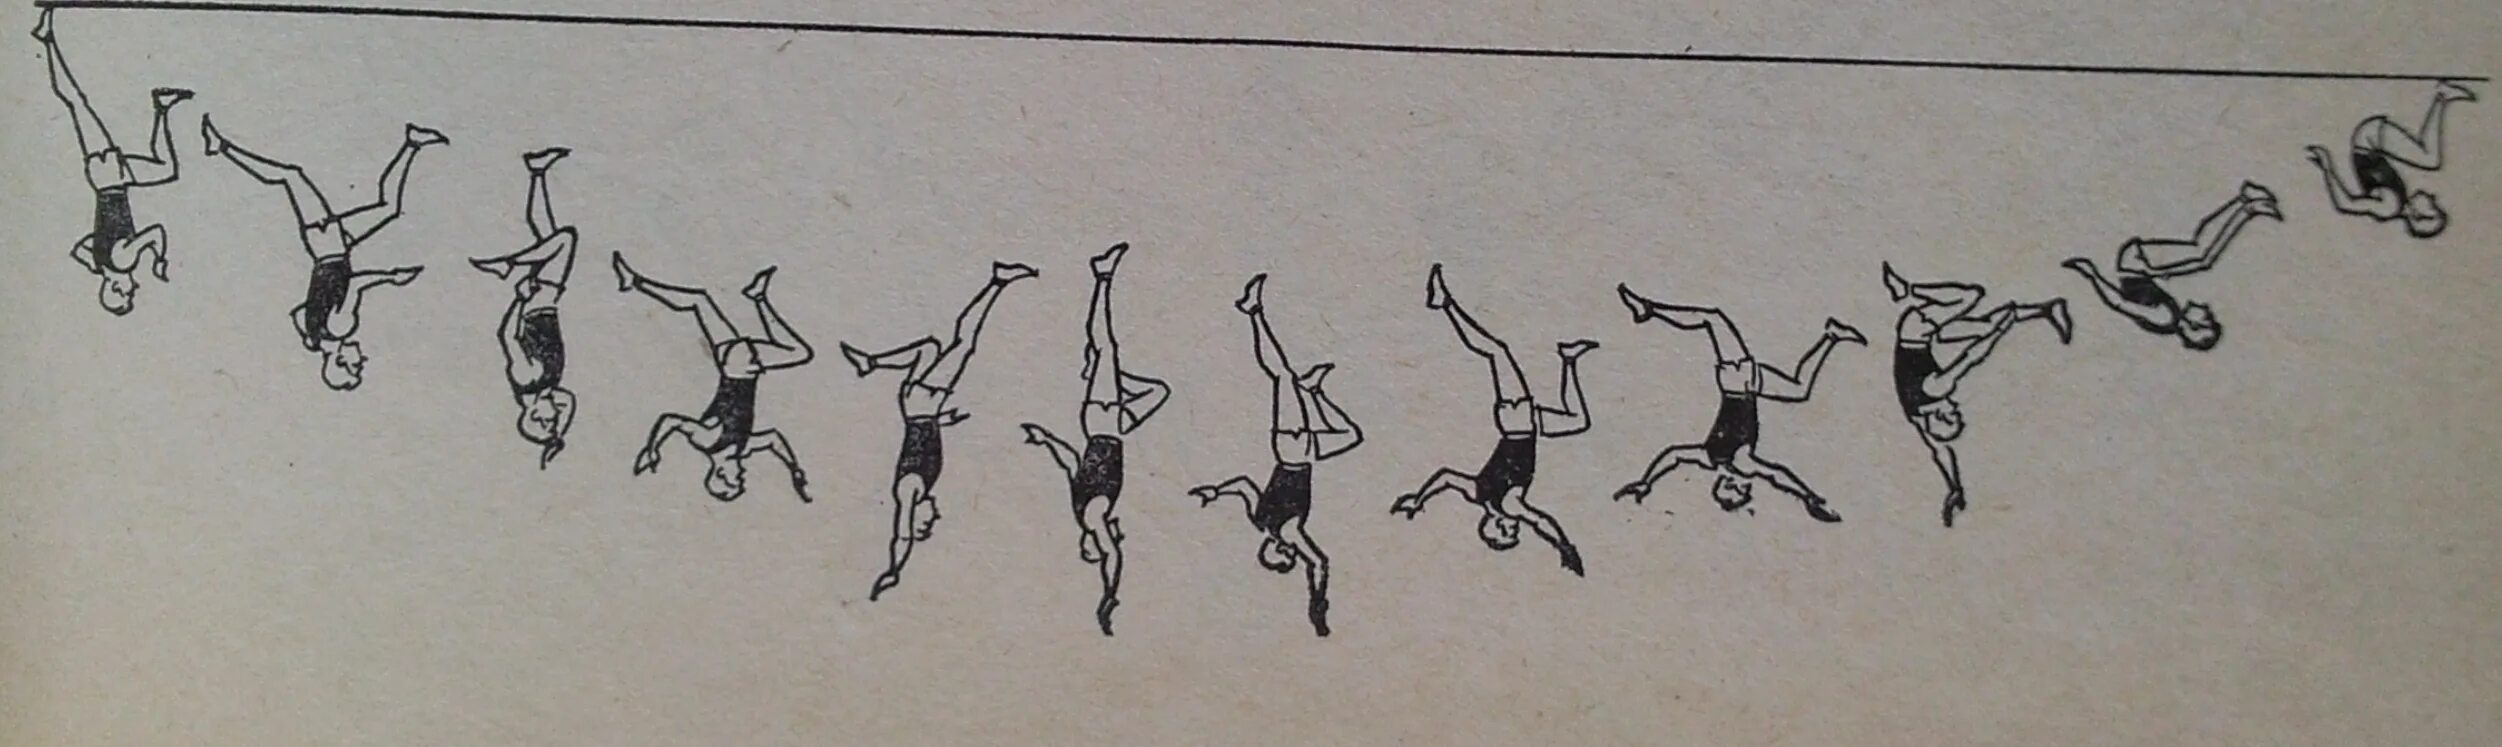 Рисунок в длину. Прыжки в длину рисунок. Рисунок на тему прыжки в длину. Детский рисунок к прыжкам в длину. Техника выполнения прыжки с разбега в картинках.